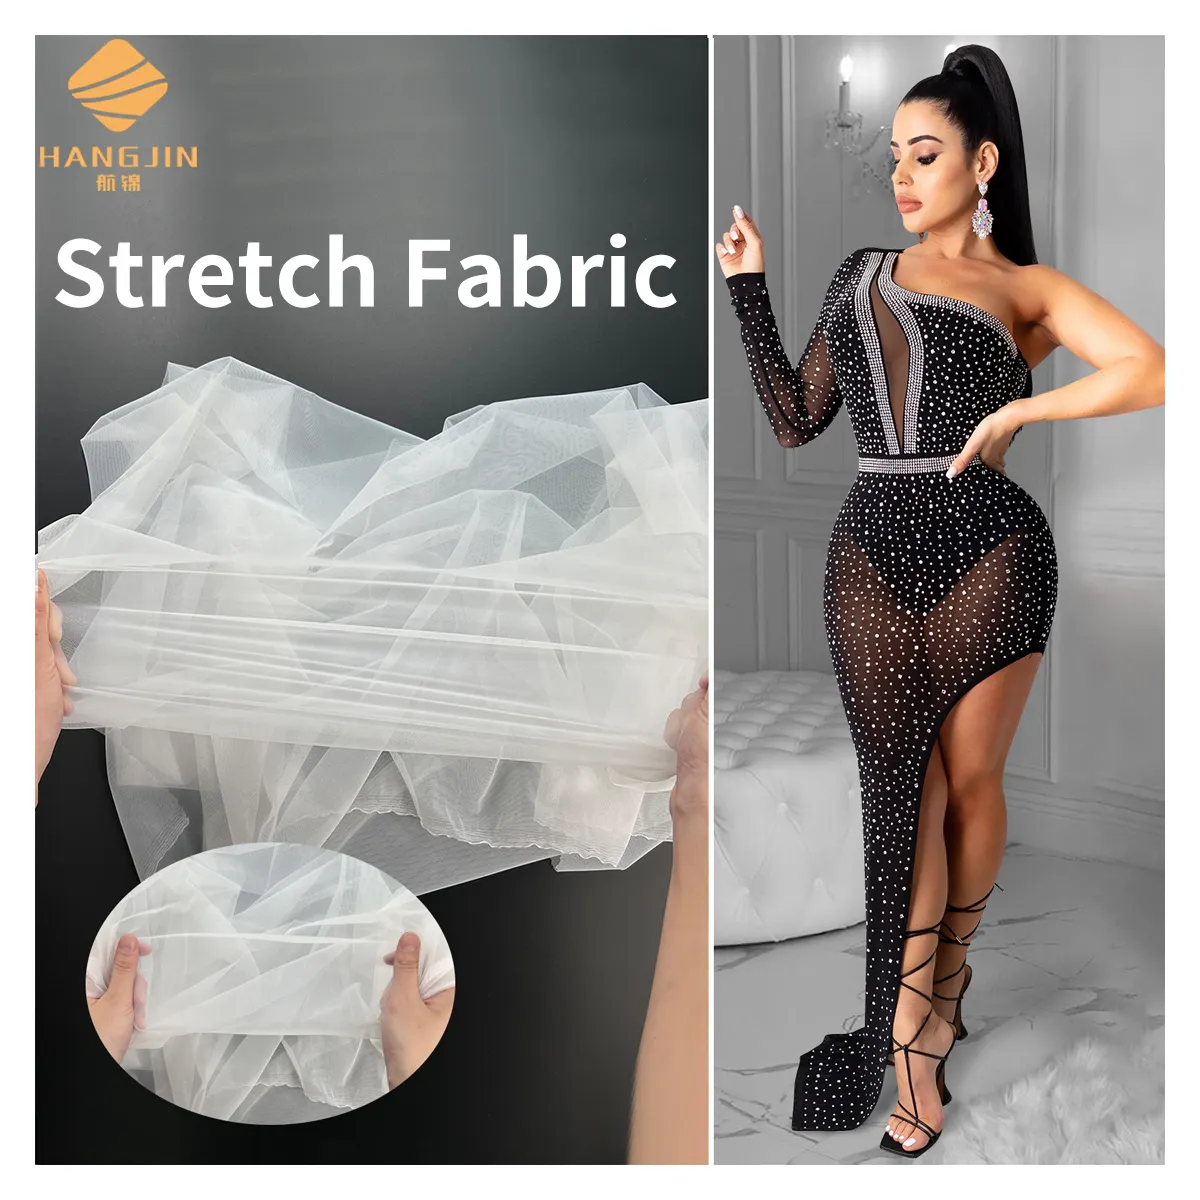 4 Way Stretch 90% Nylon 10% Mềm Tulle Spandex Vải Đồ Lót Đồ Lót Legging Trong Suốt Stretchy Tulle Lưới Vải